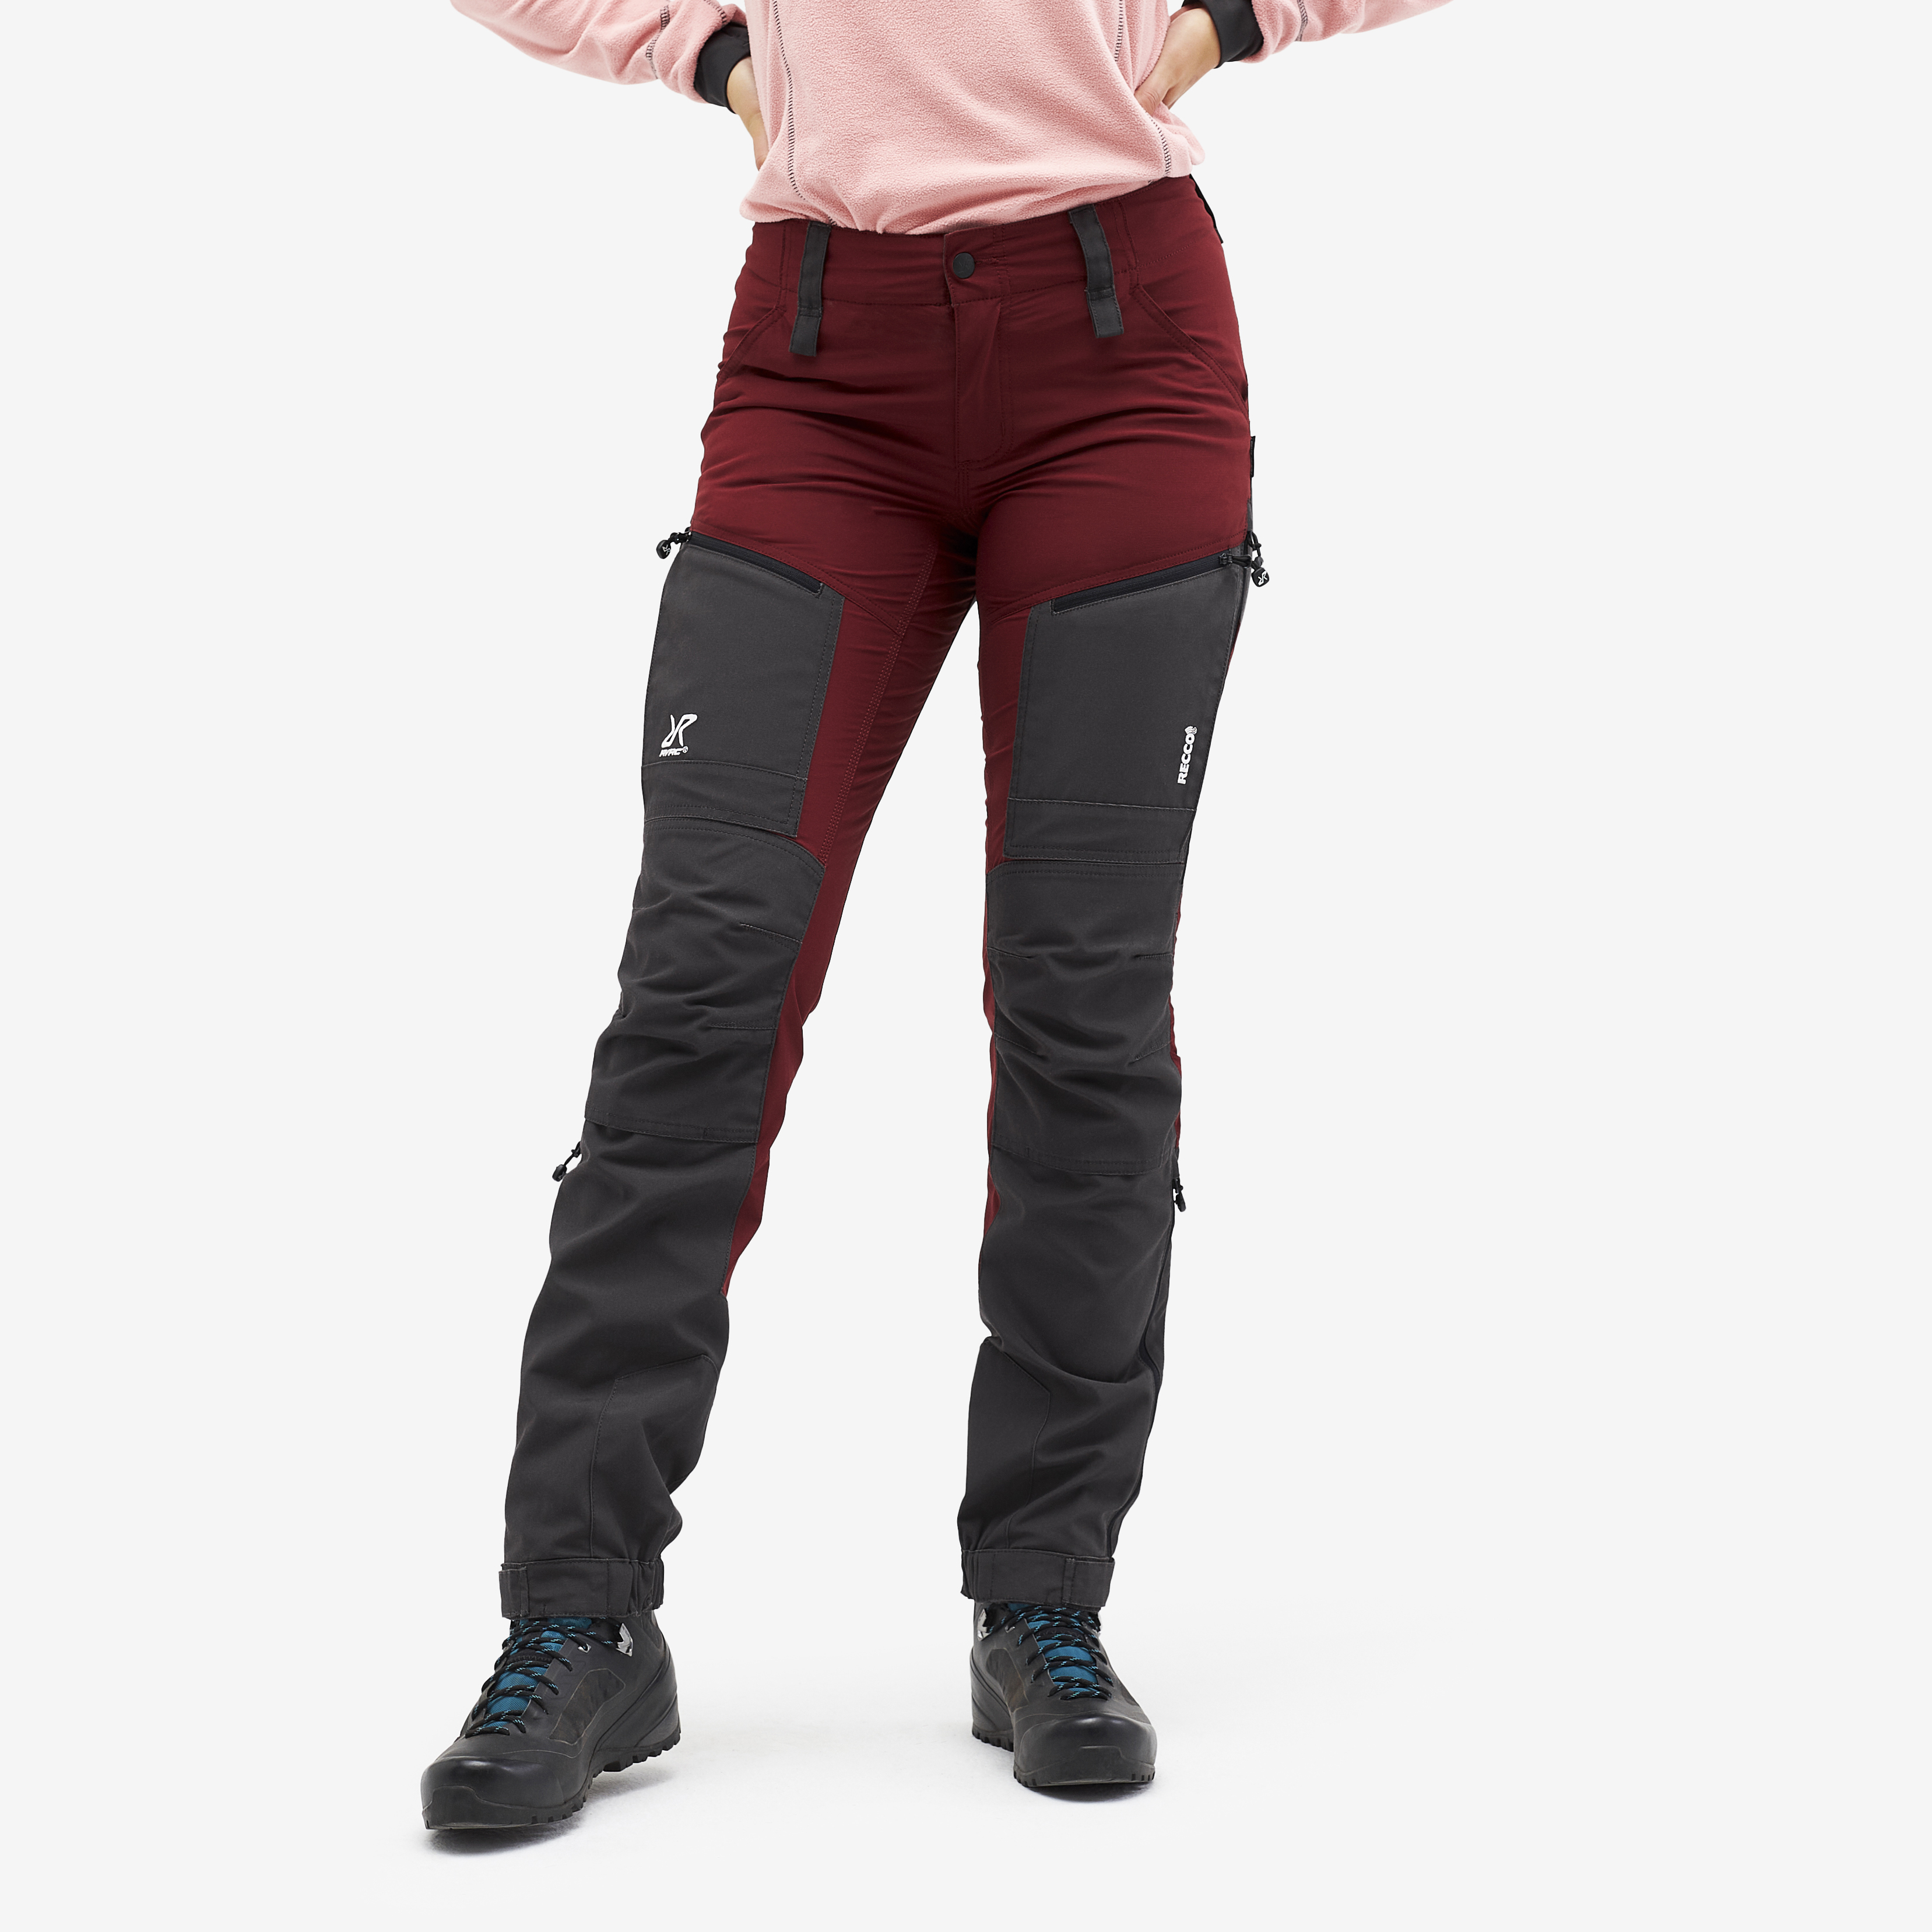 Pantalones outdoor Nordwand para mujer en rojo oscuro